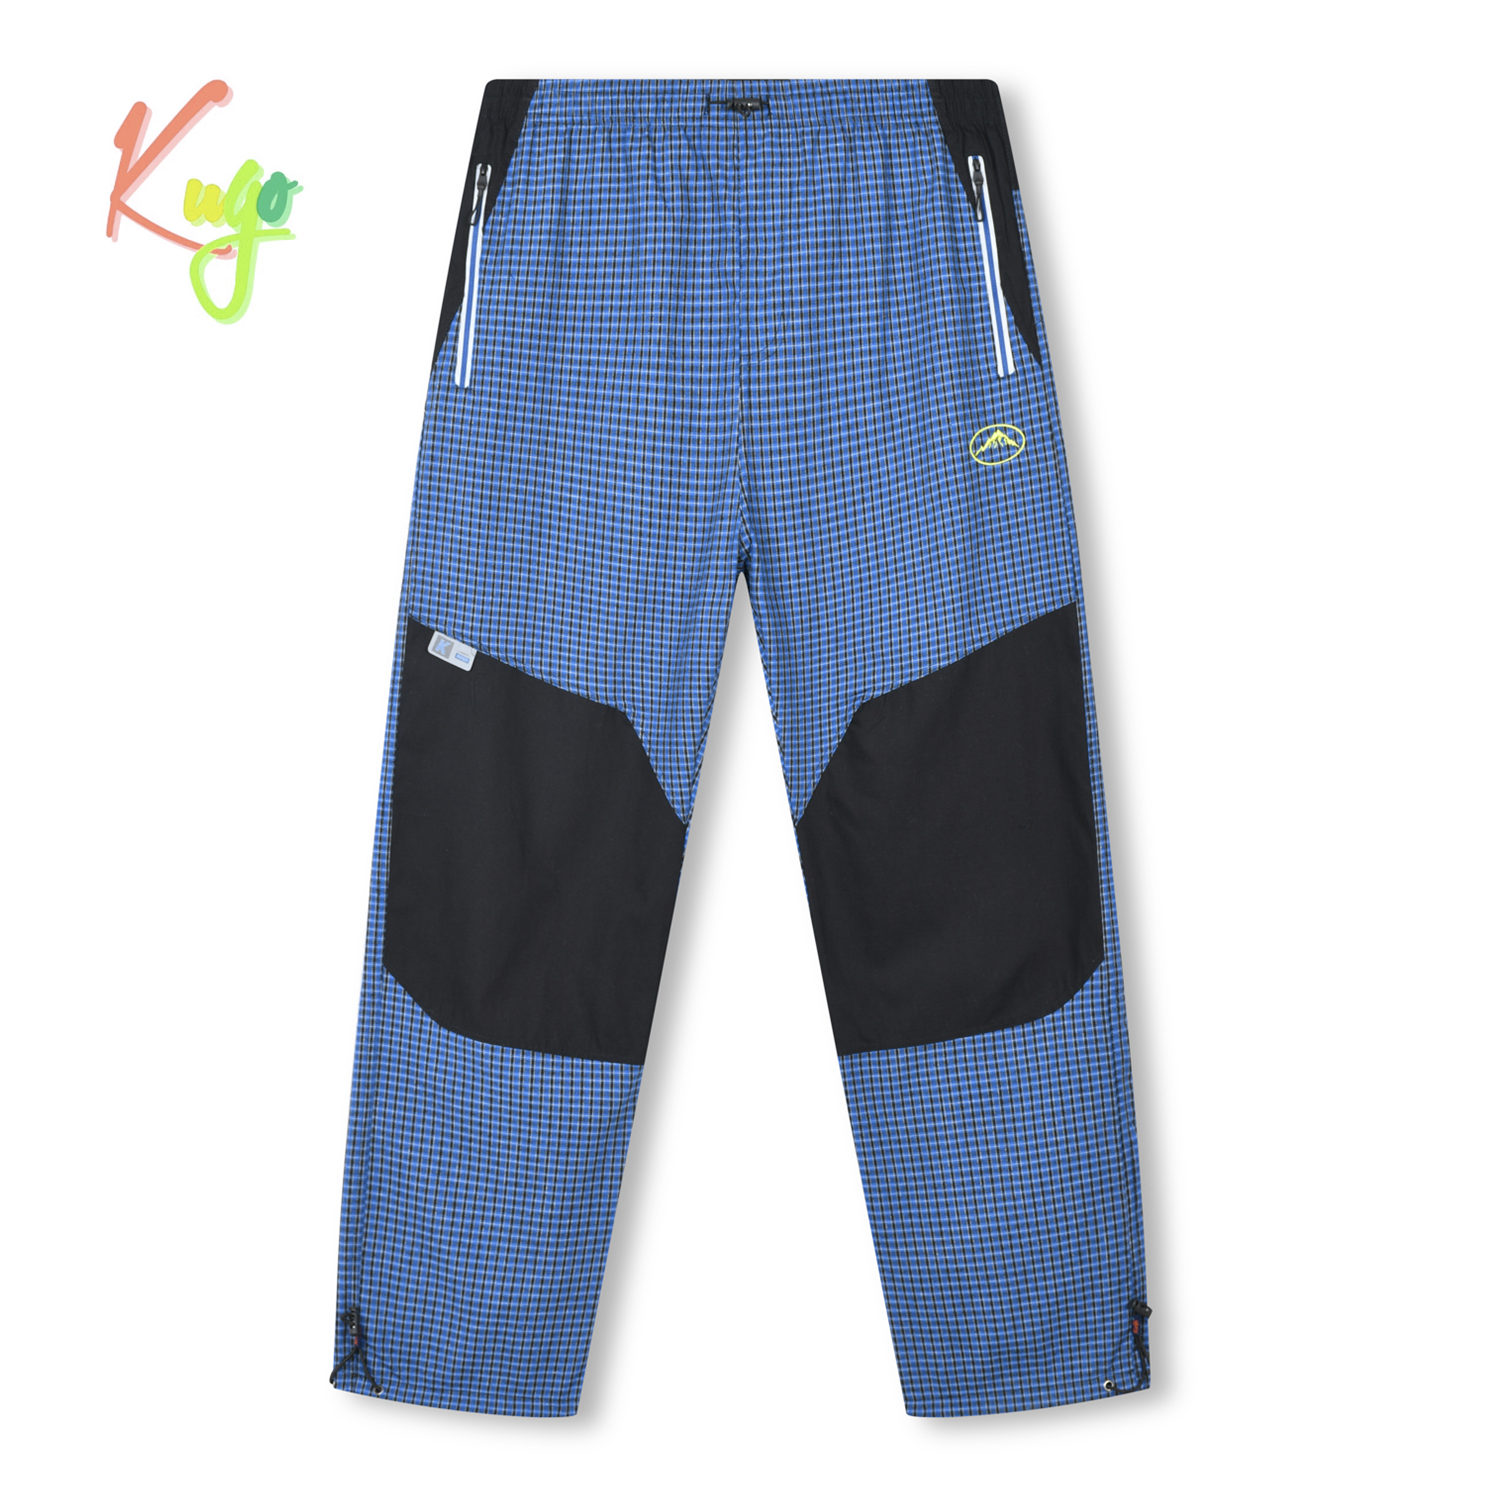 Pánské sportovní kalhoty - KUGO FK8611, modrá Barva: Modrá, Velikost: L